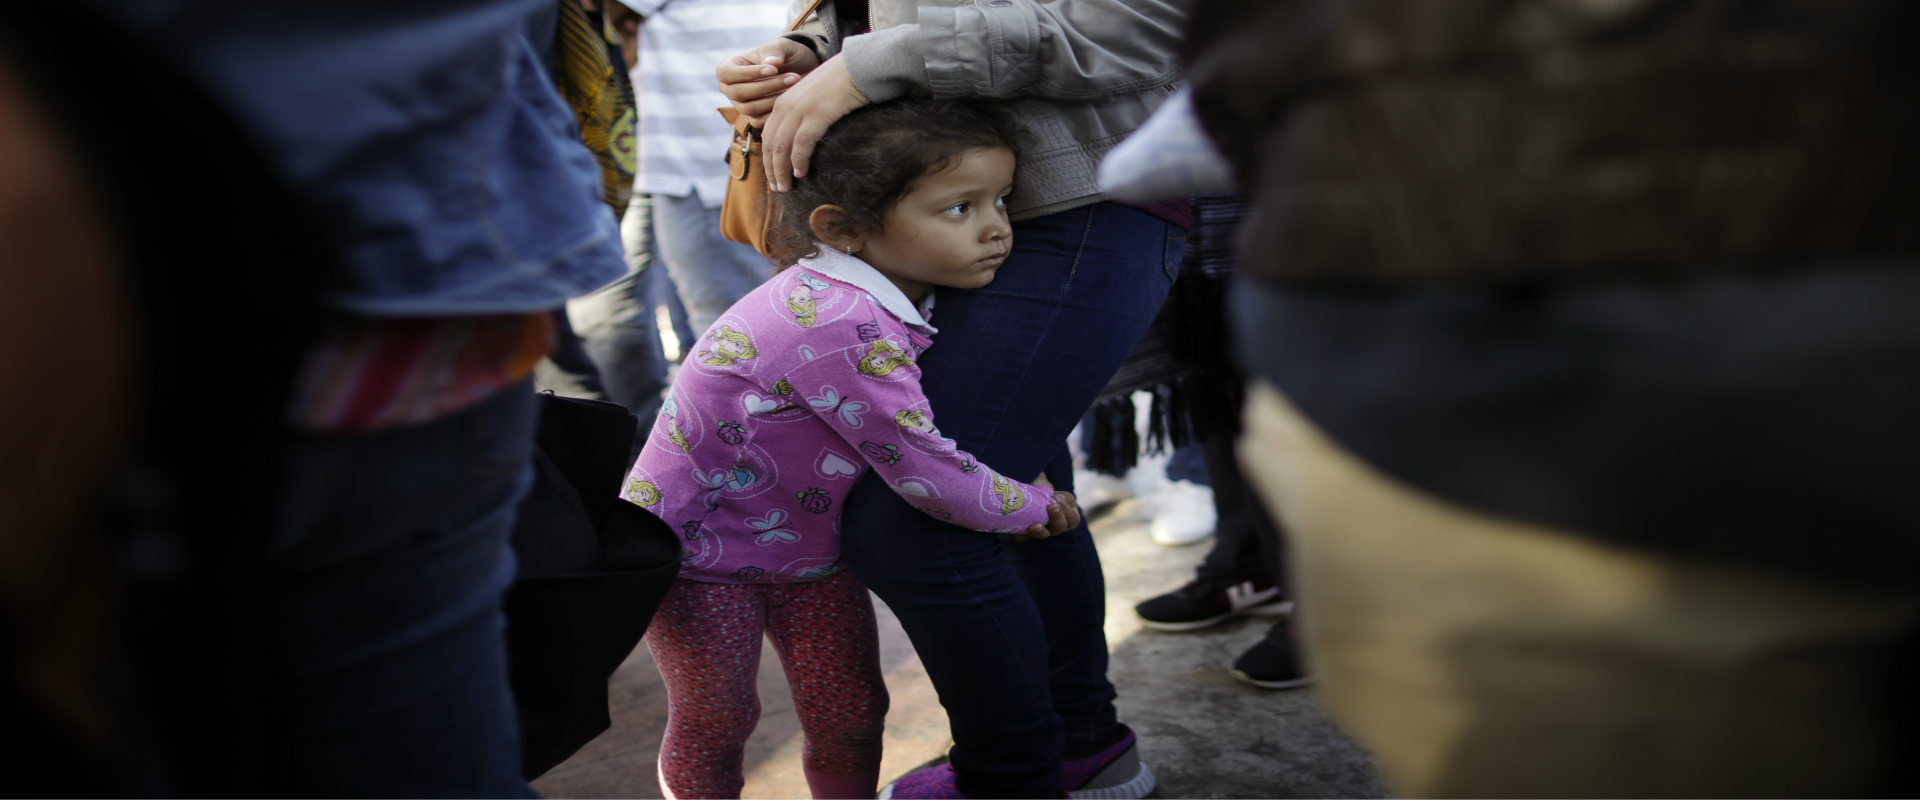 ילדה בגבול מקסיקו-ארה"ב